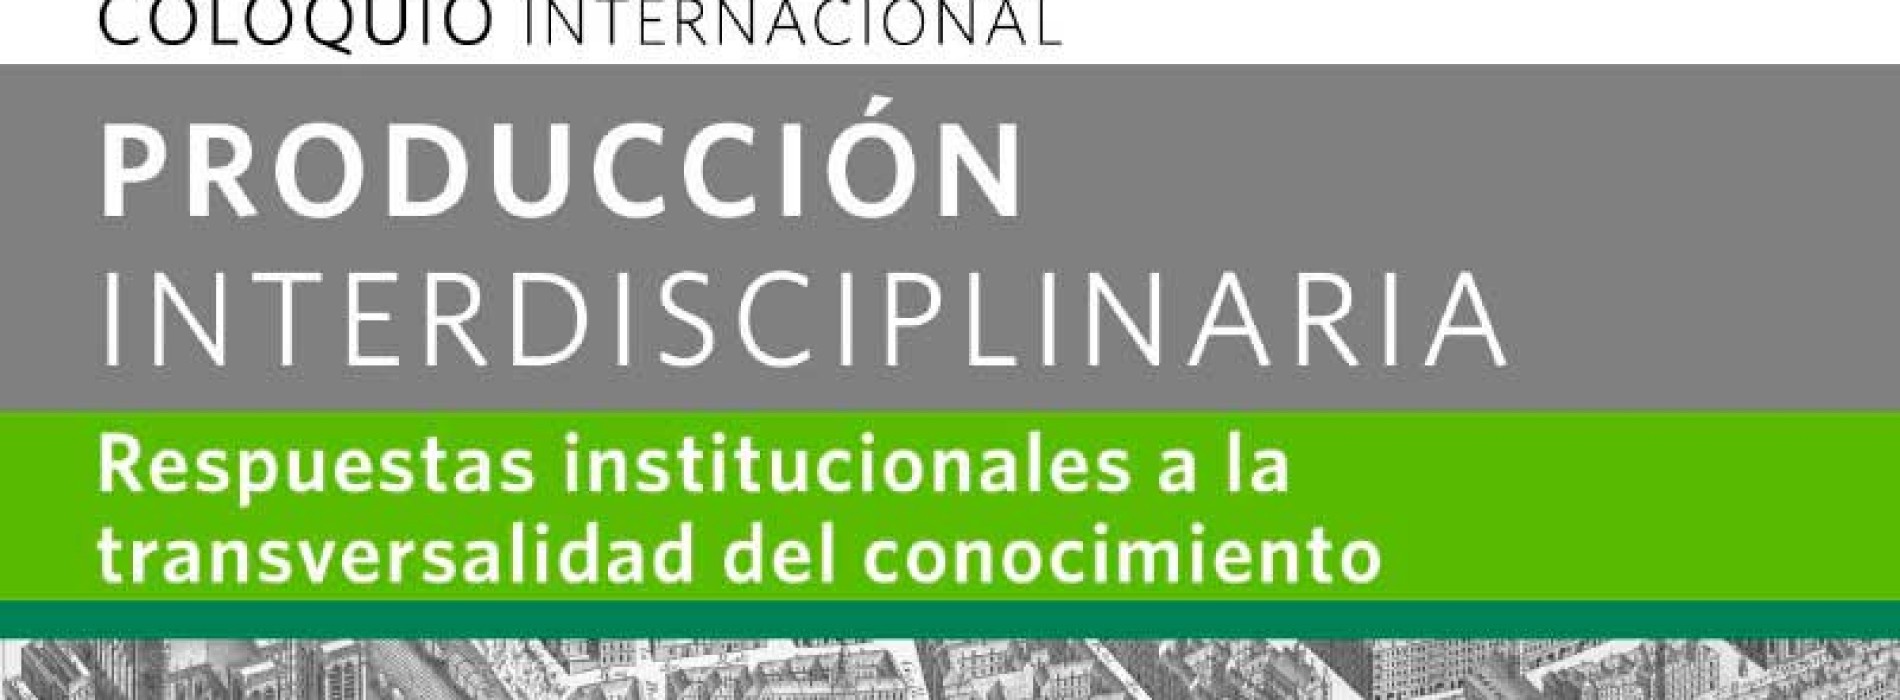 International Interdisciplinary Production Colloquium